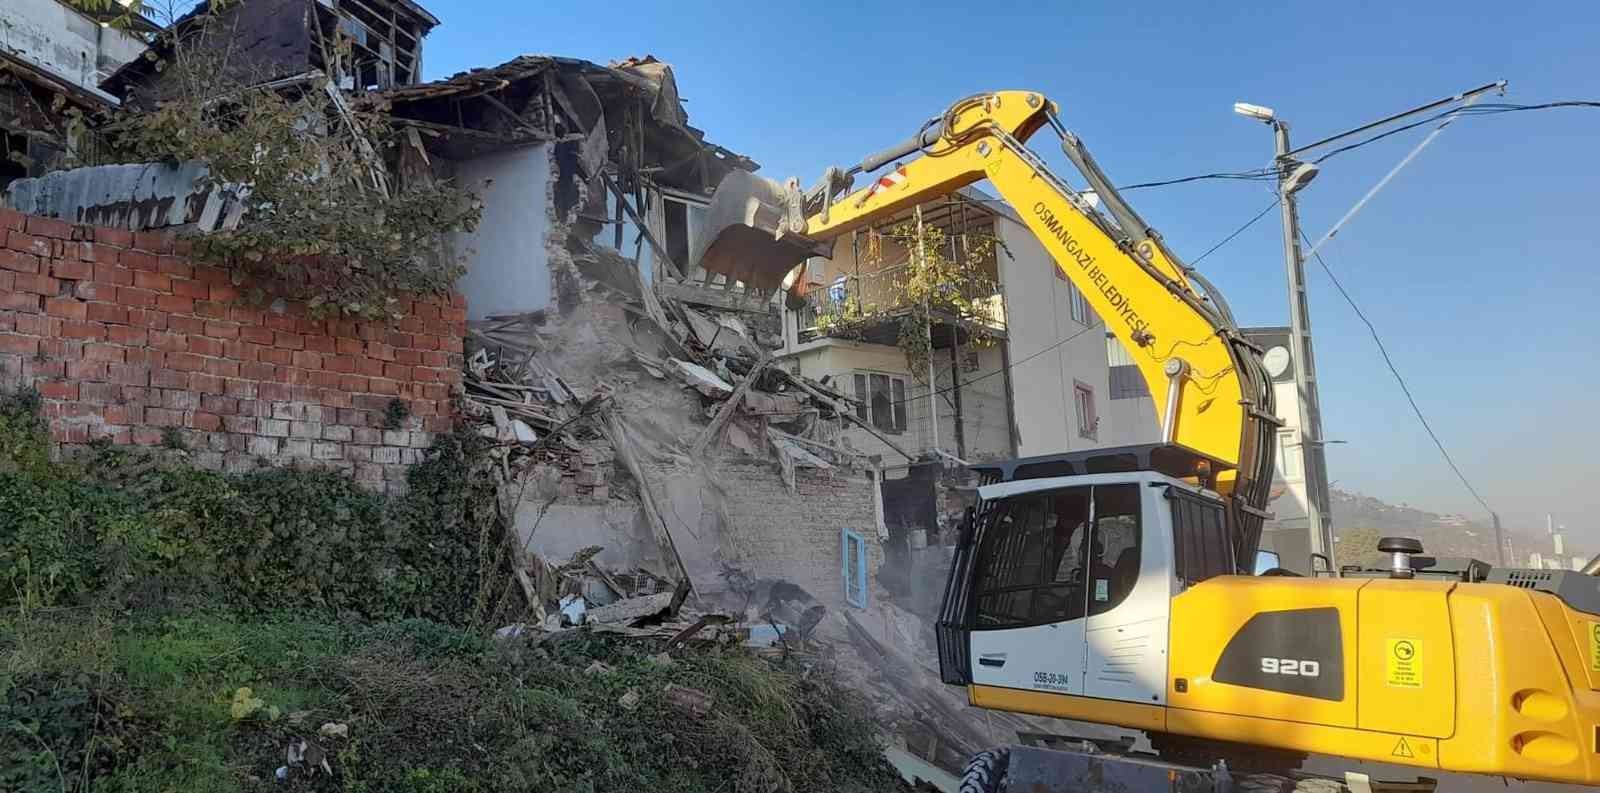 Bir yılda 107 metruk bina yıkıldı #bursa